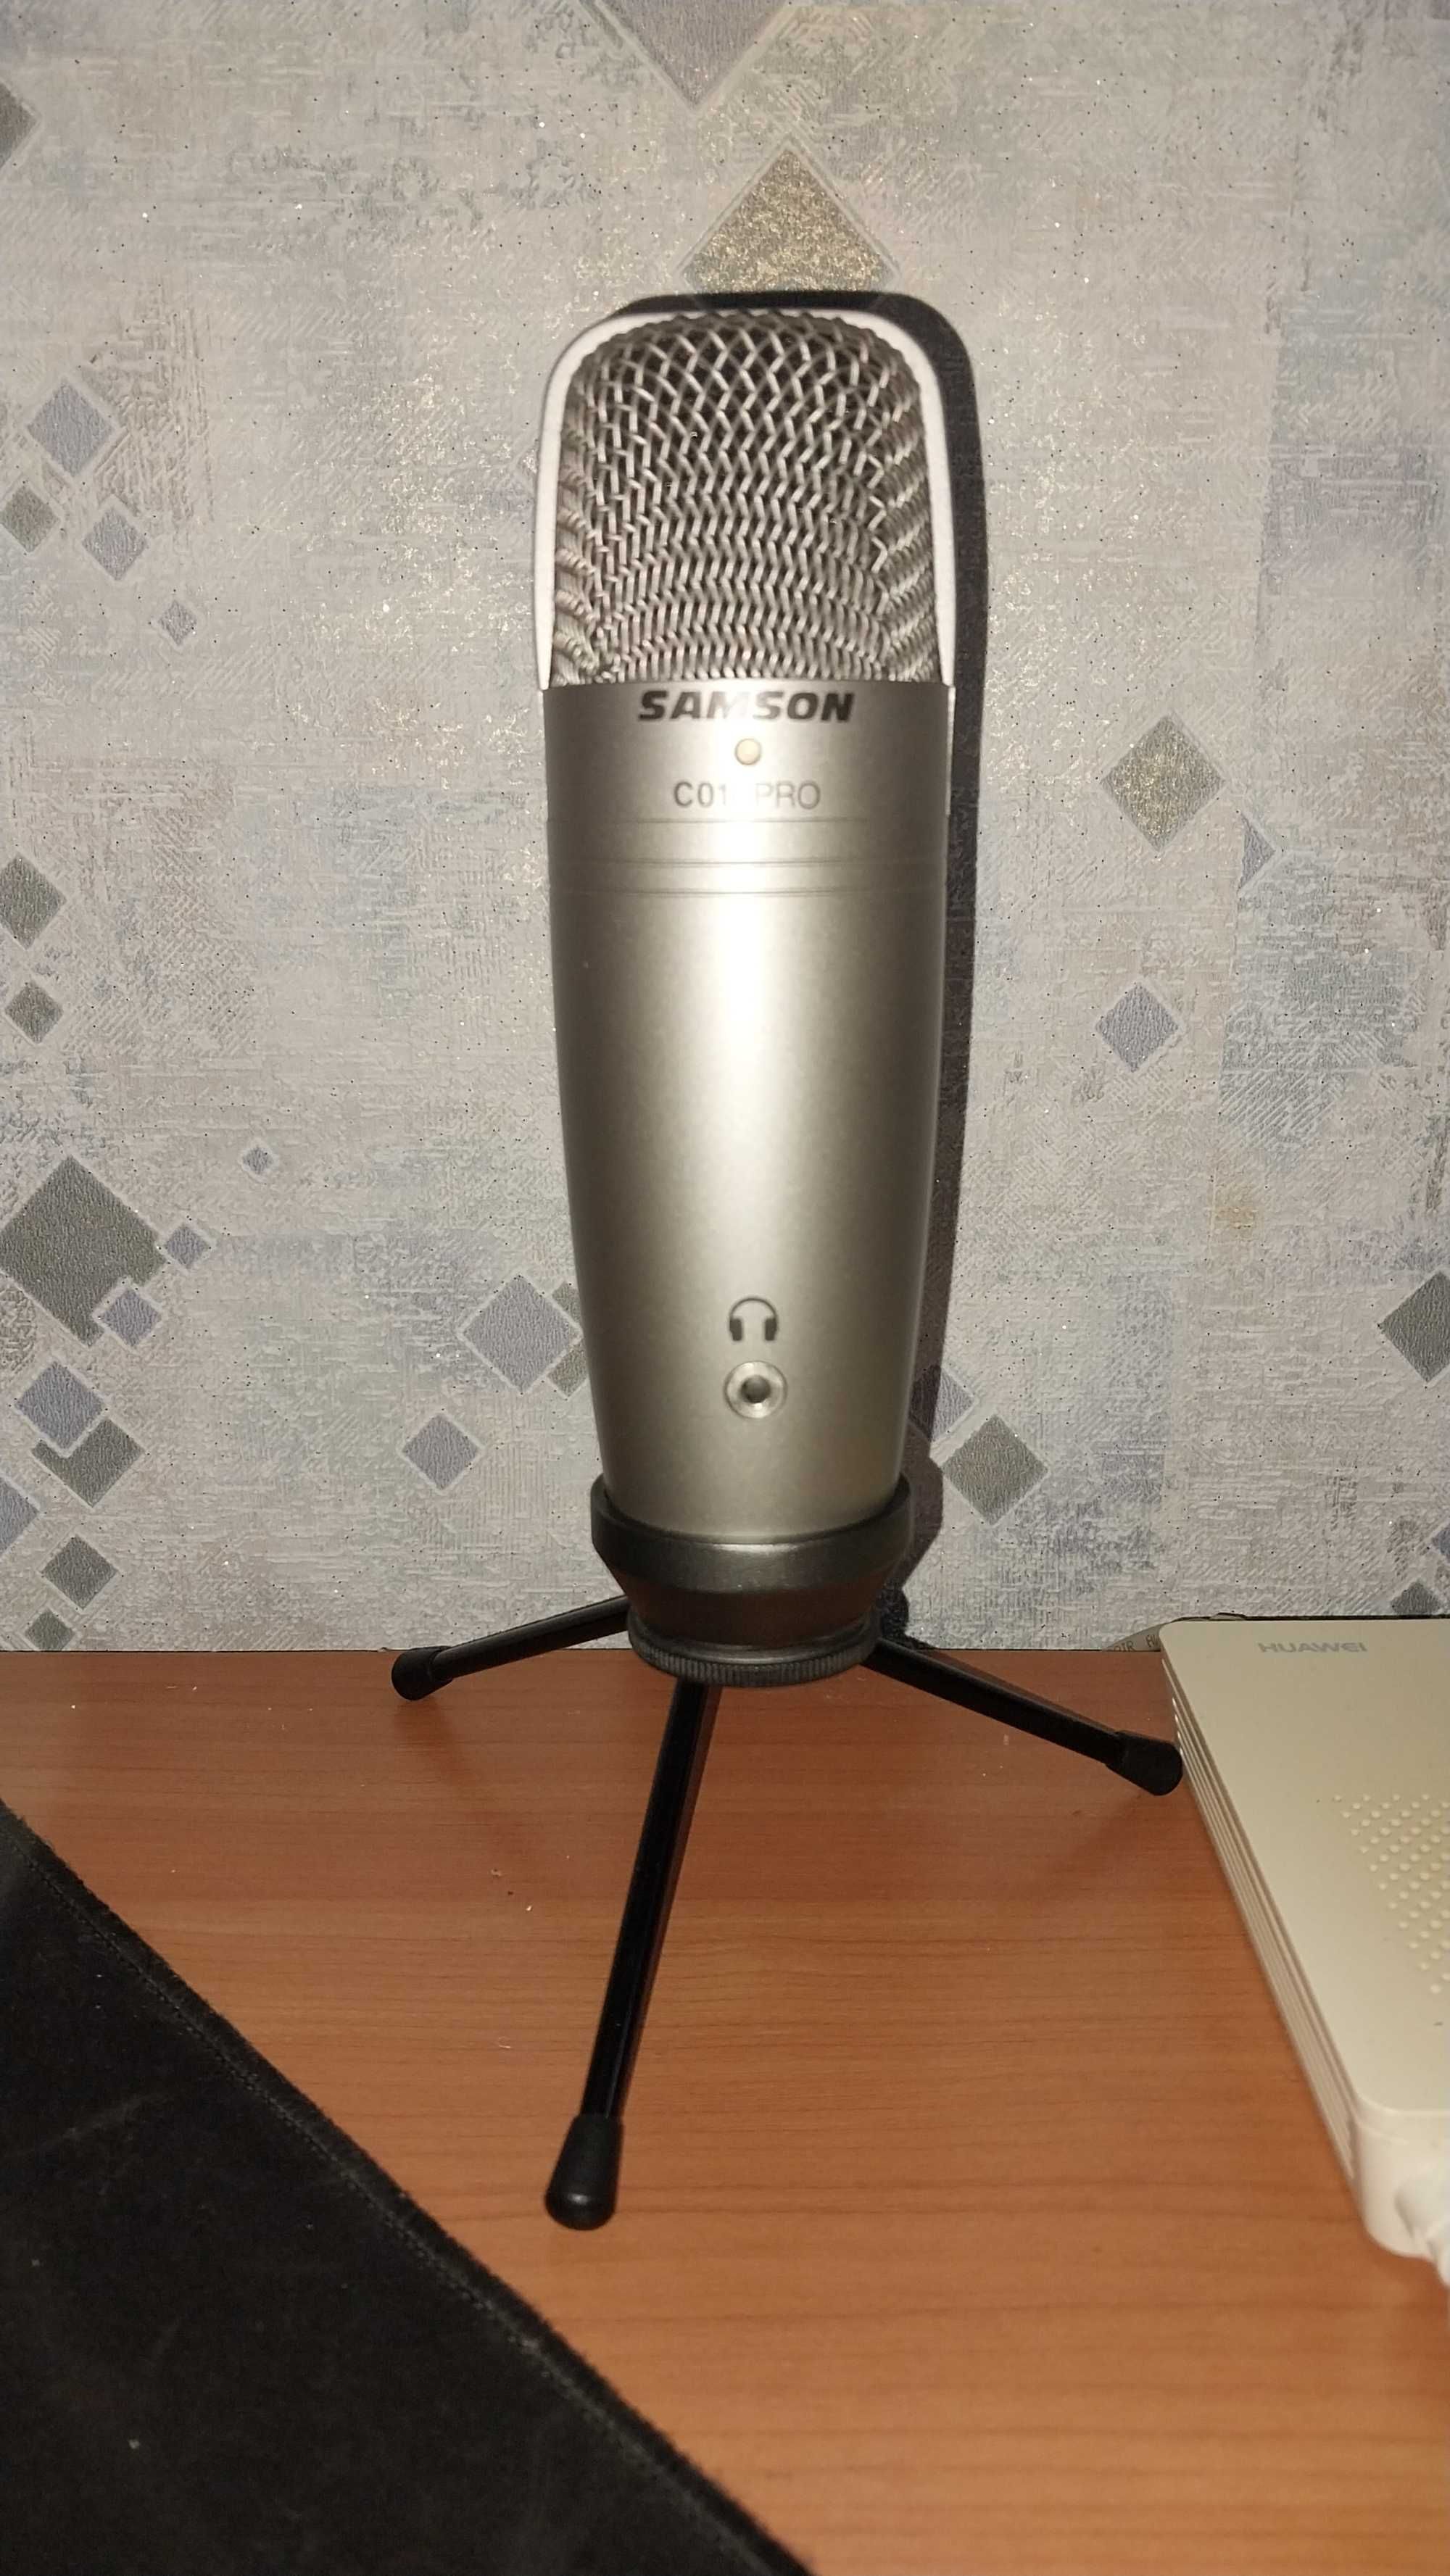 Микрофон Samson C01U PRO USB